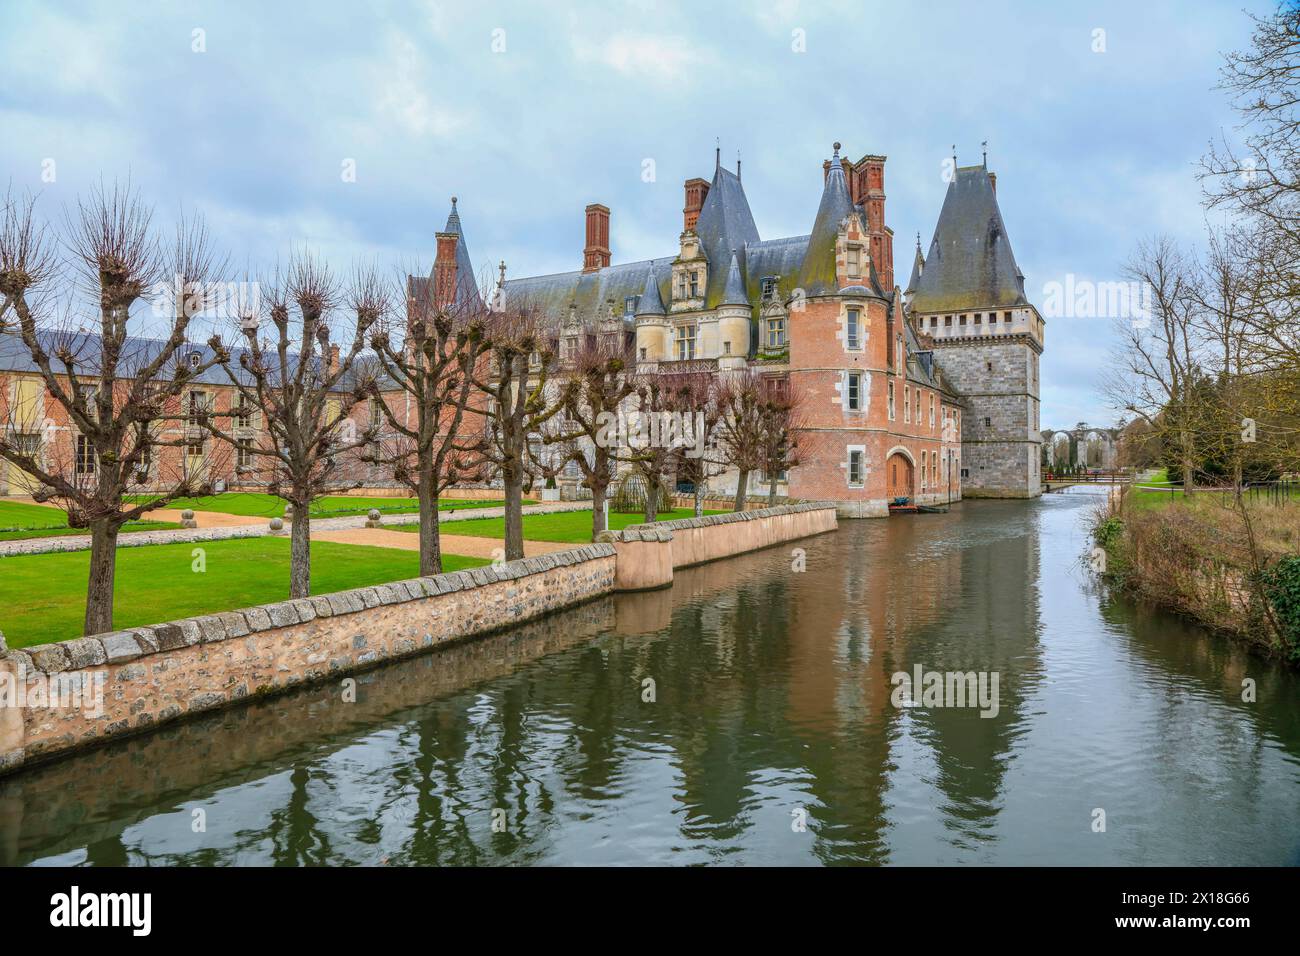 Chateau de Maintenon on the Eure river, Eure-et-Loir department, Centre-Val de Loire region, France Stock Photo